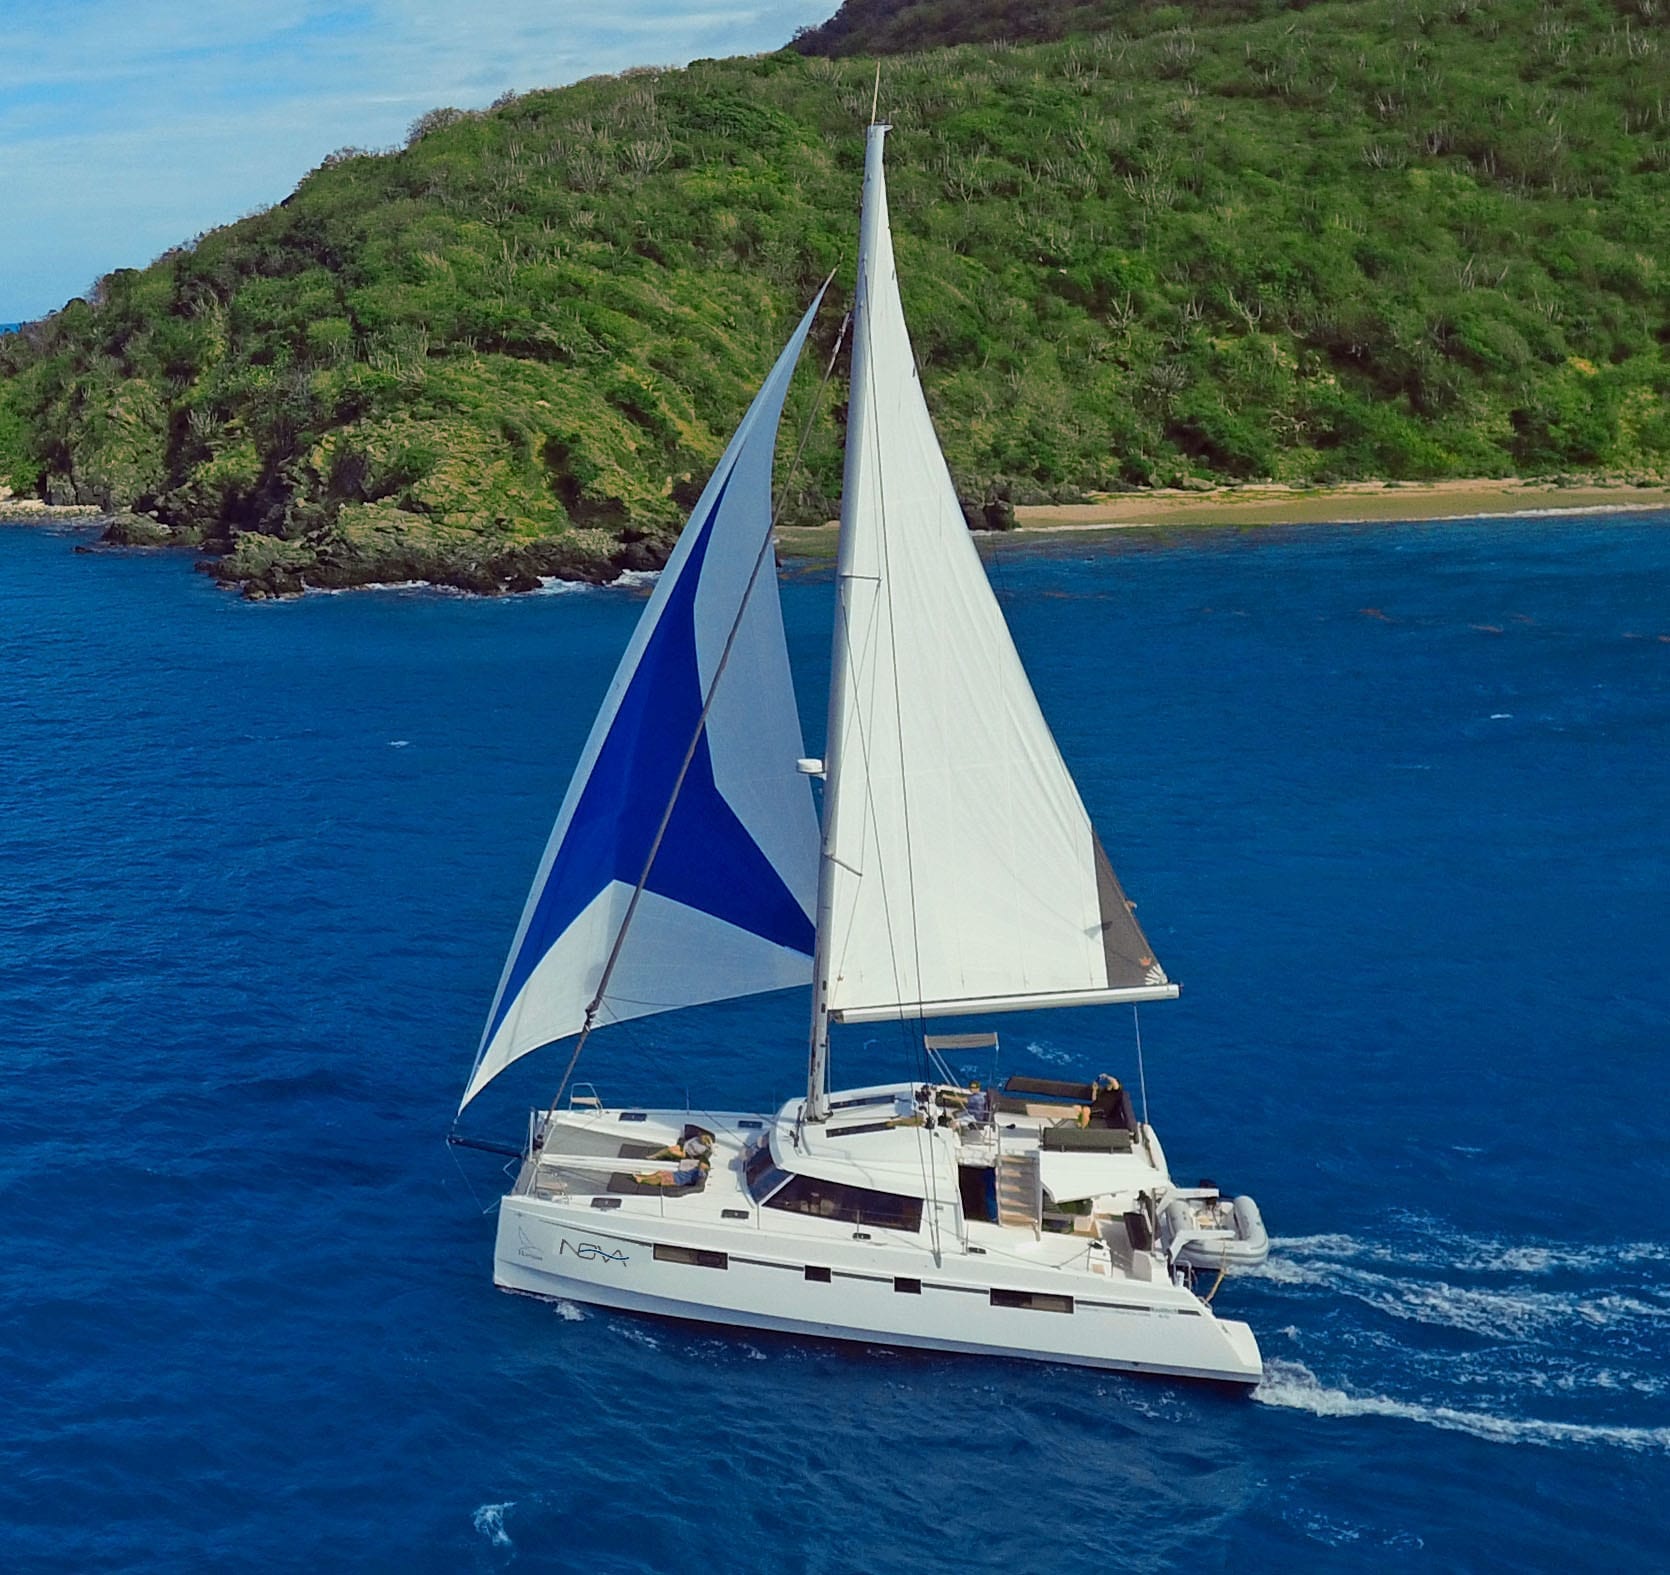 bvi horizon yacht charters